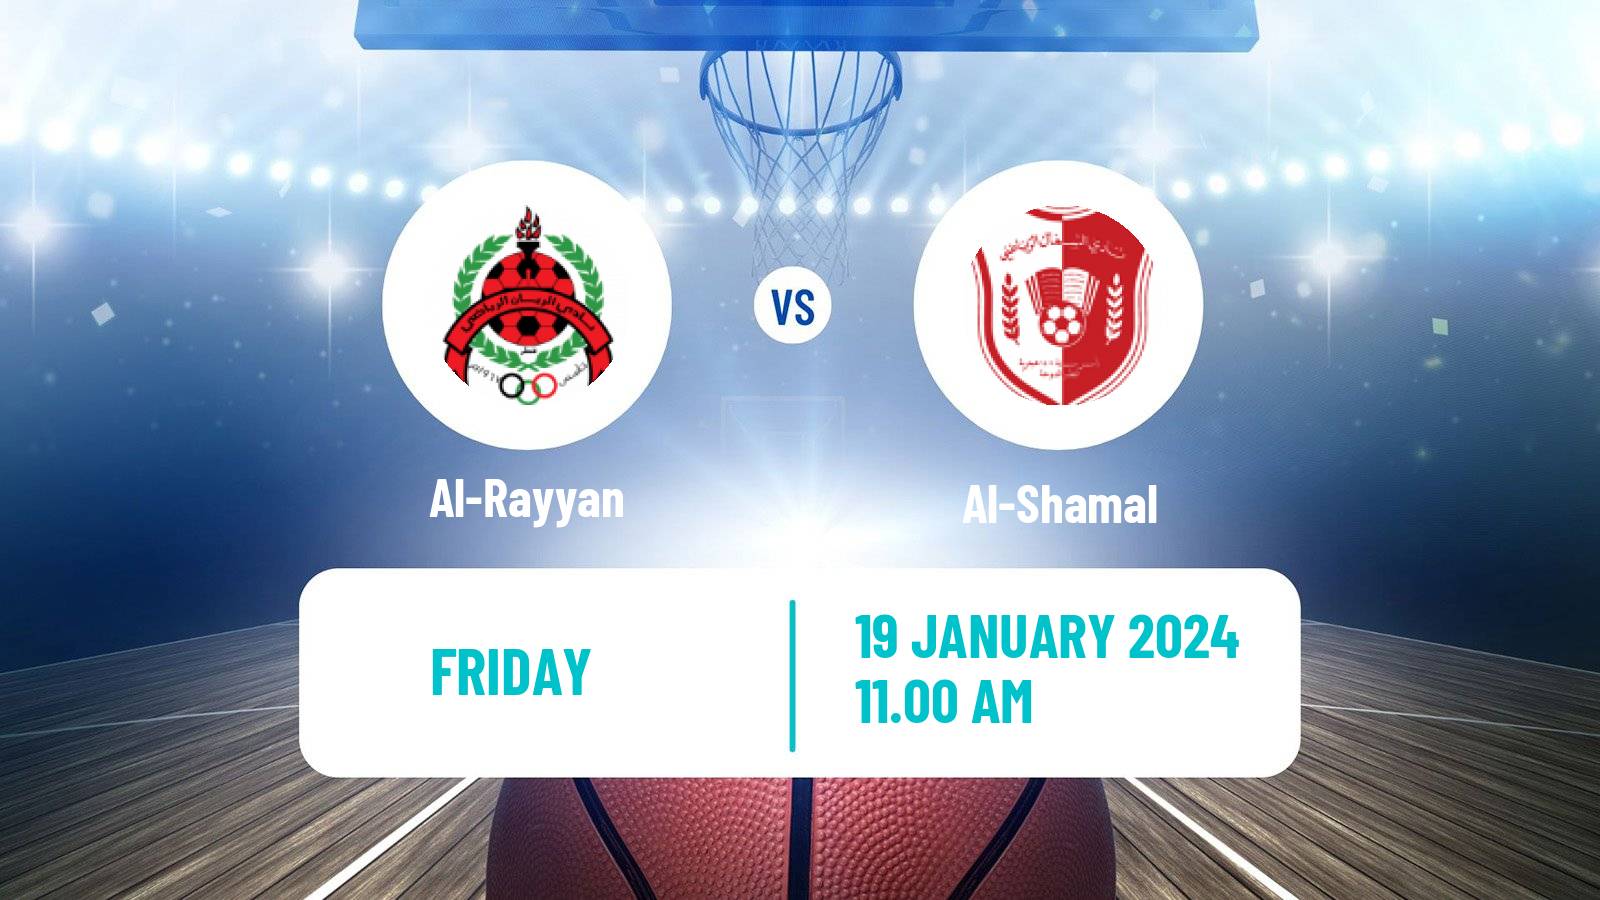 Basketball Qatar Basketball League Al-Rayyan - Al-Shamal